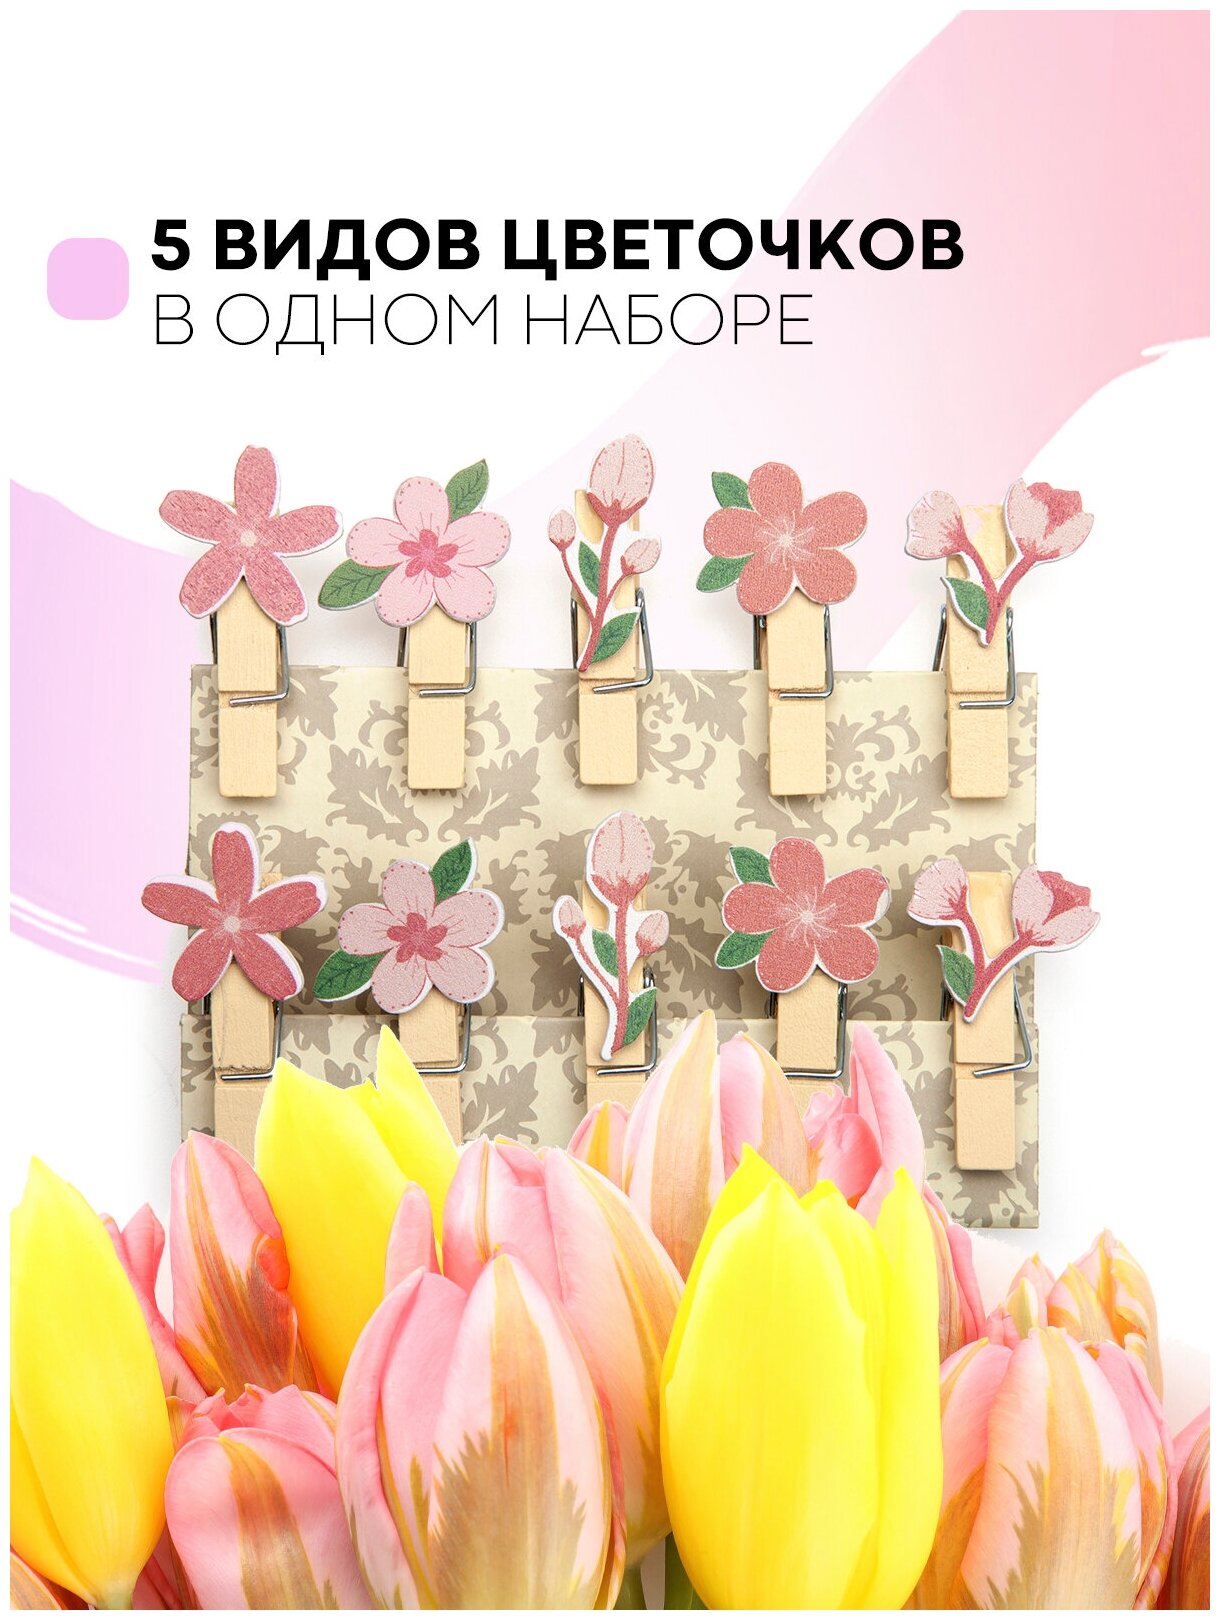 Набор из 10 декоративных прищепок для фотографий (маленькие деревянные прищепки для подарков и творчества), бренд картофан, цветы